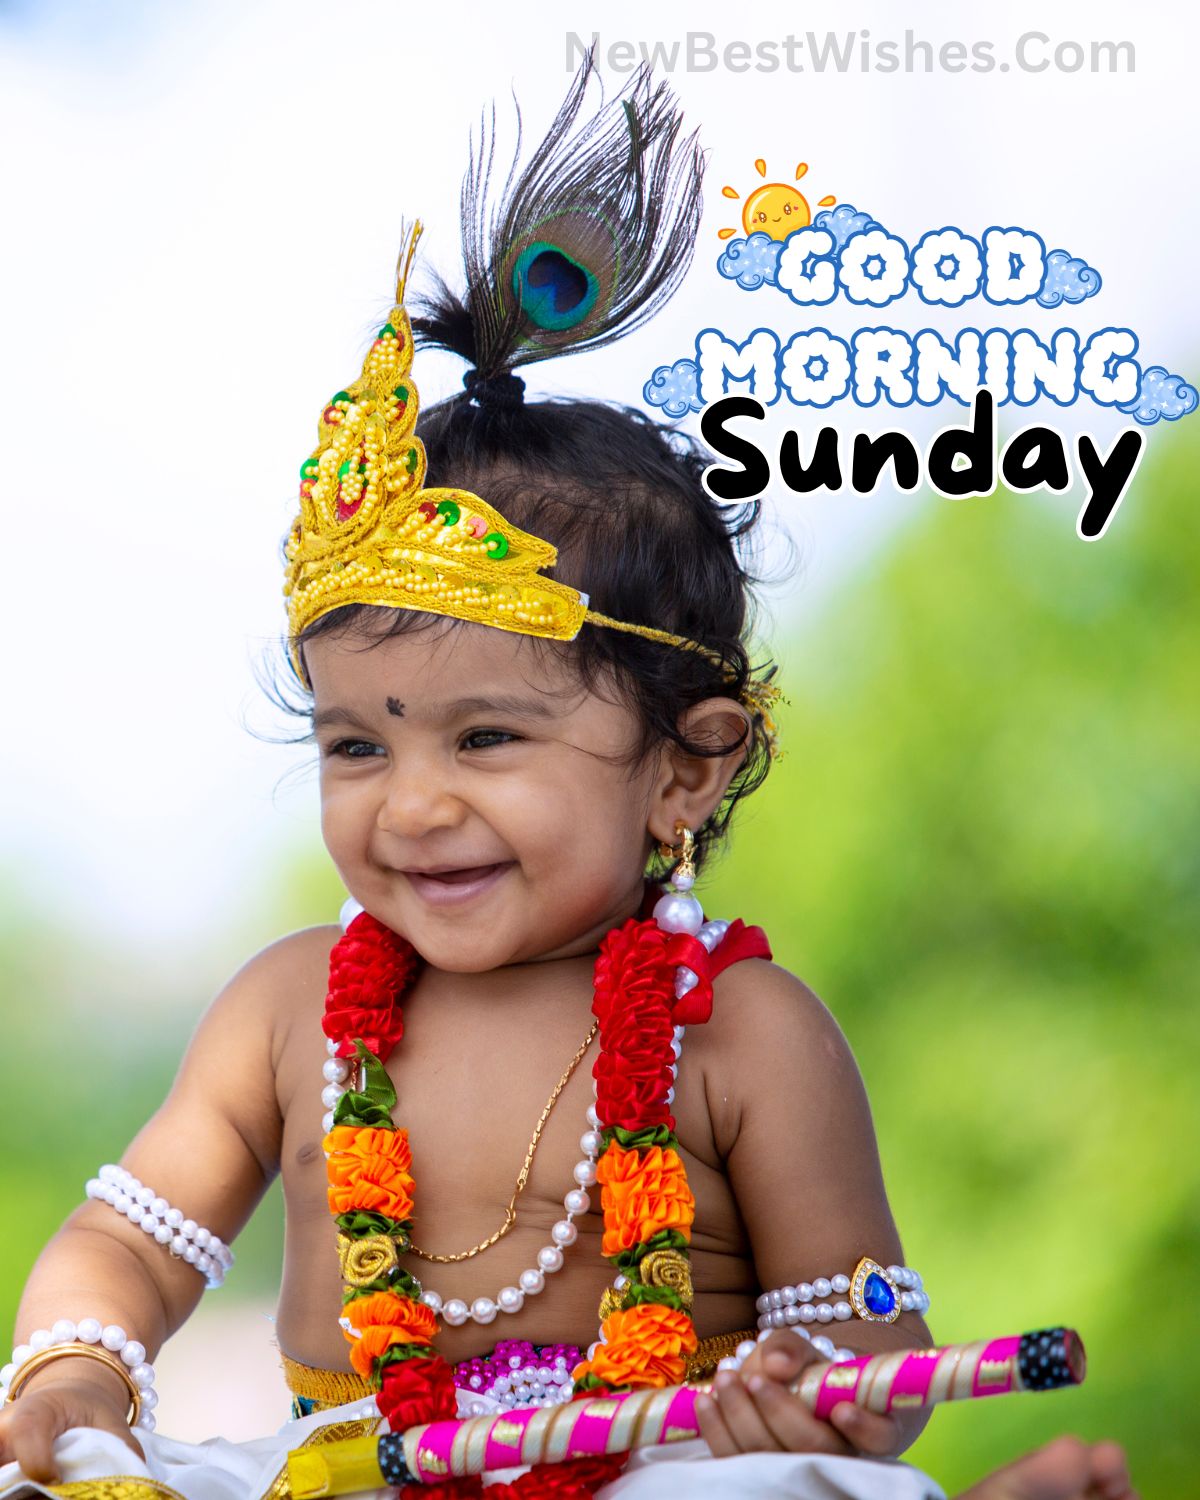 Sunday good morning wishes with god images 13